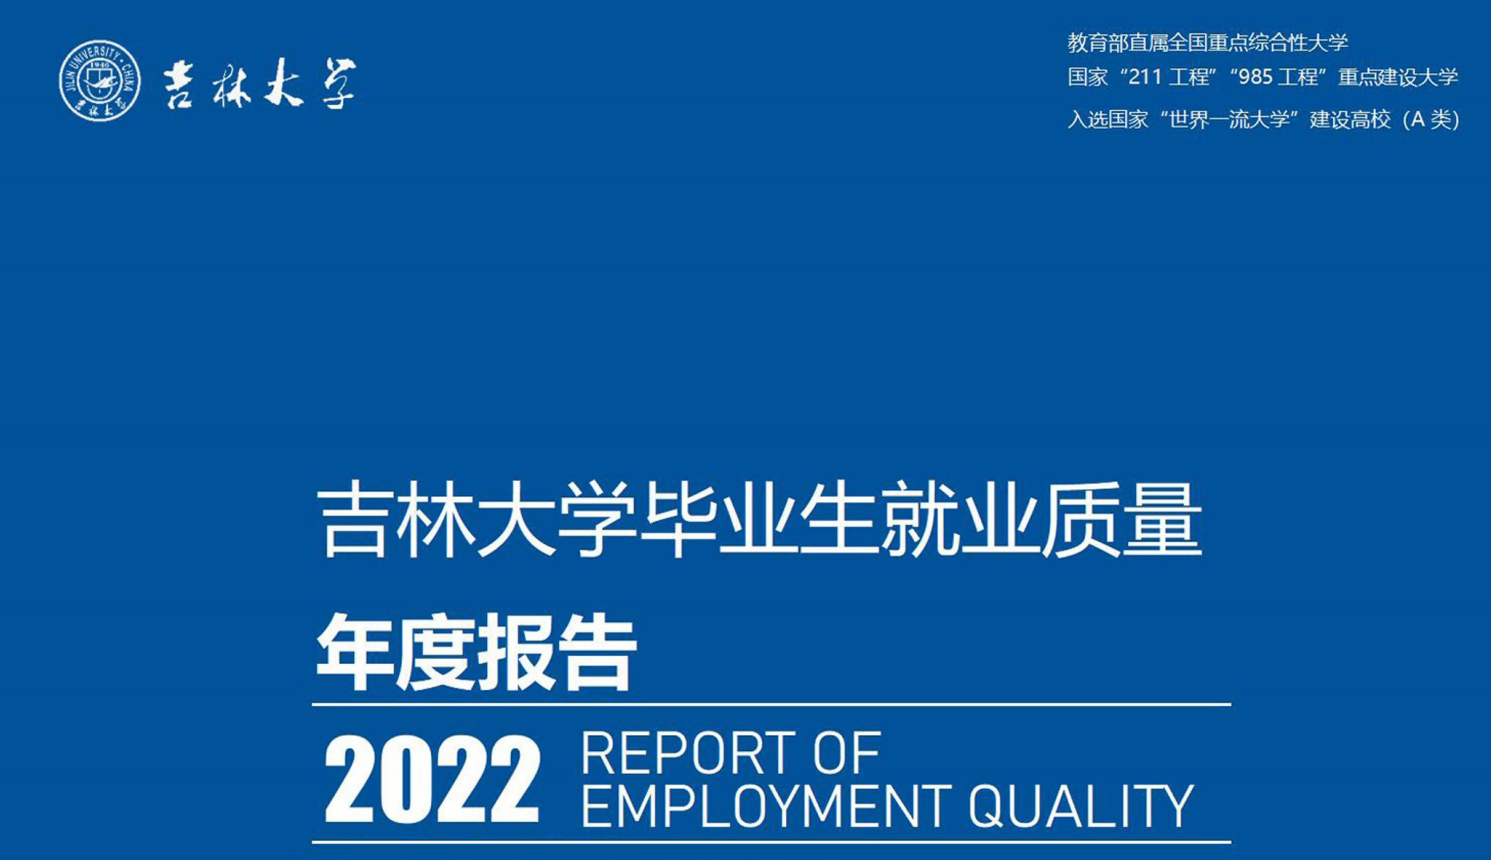 吉林大学公布《2022届毕业生就业质量报告》 哪些专业就业率